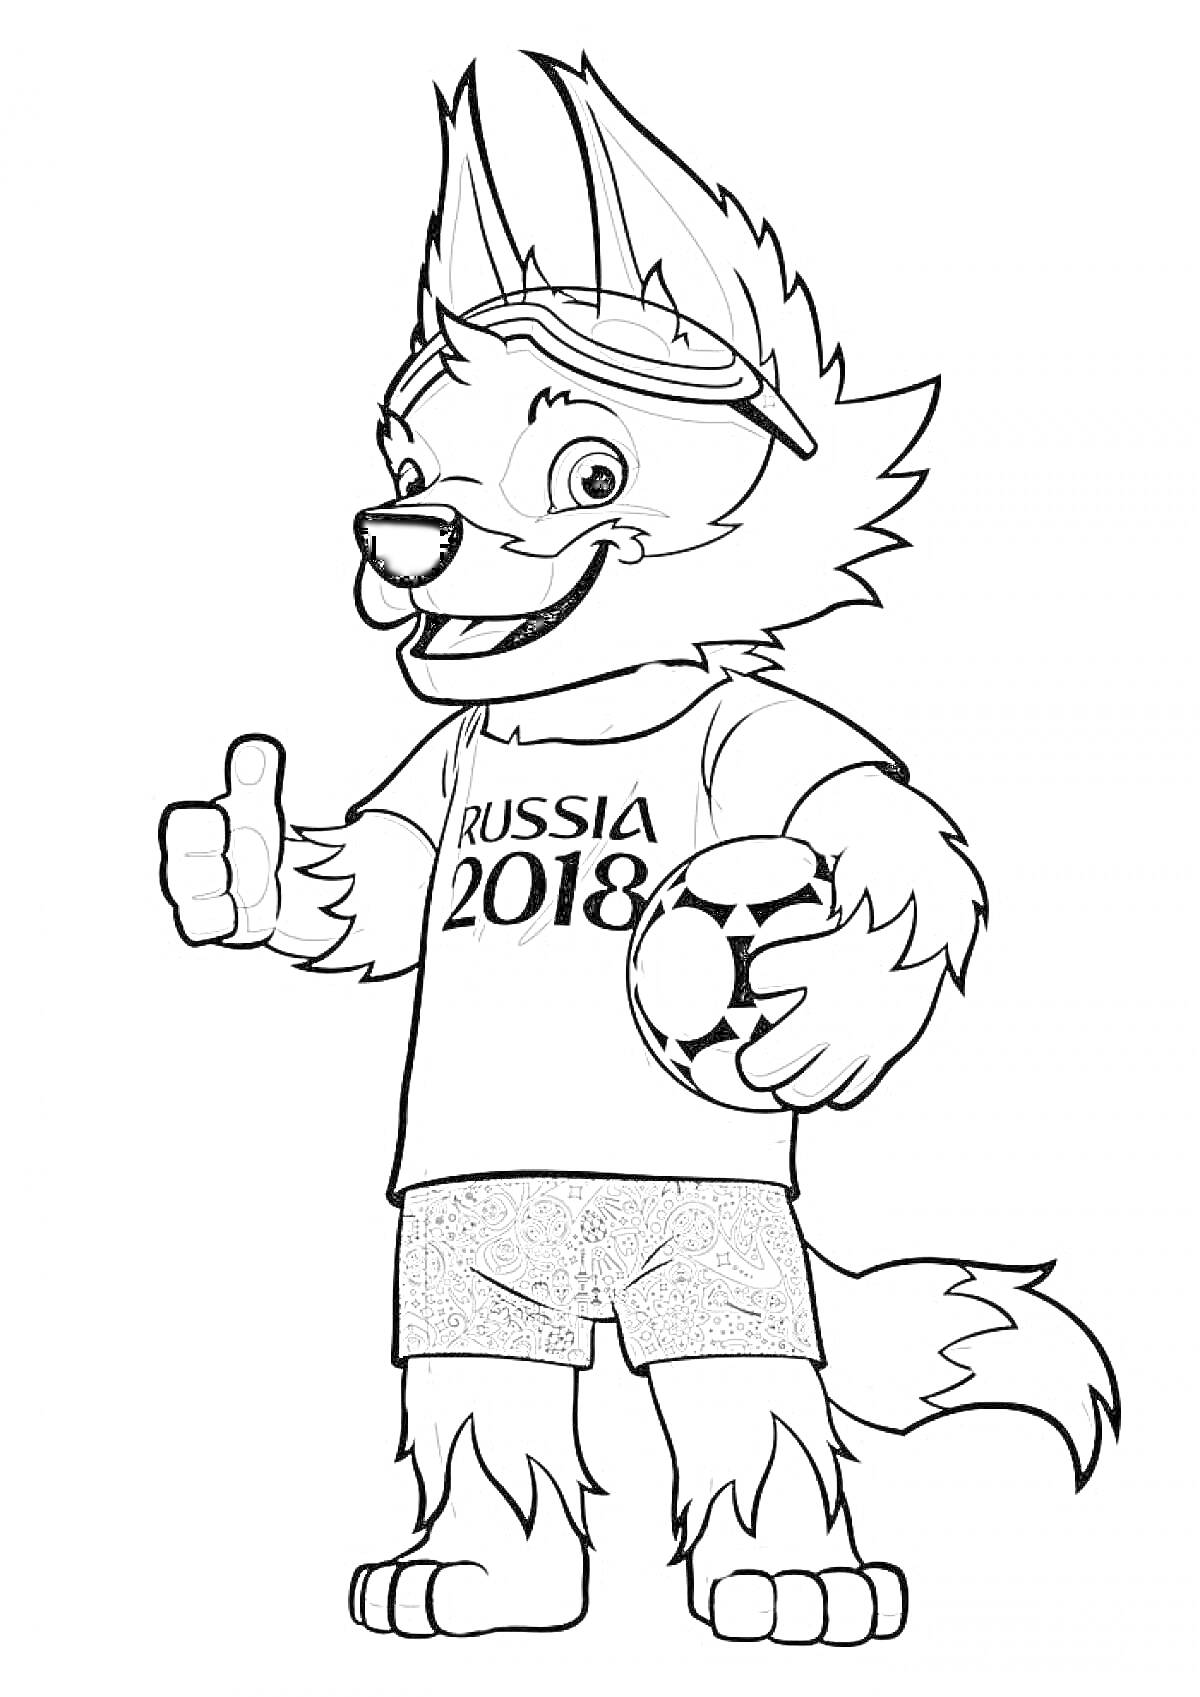 Забивака — талисман Чемпионата мира по футболу 2018 года, одетый в футболку с надписью 